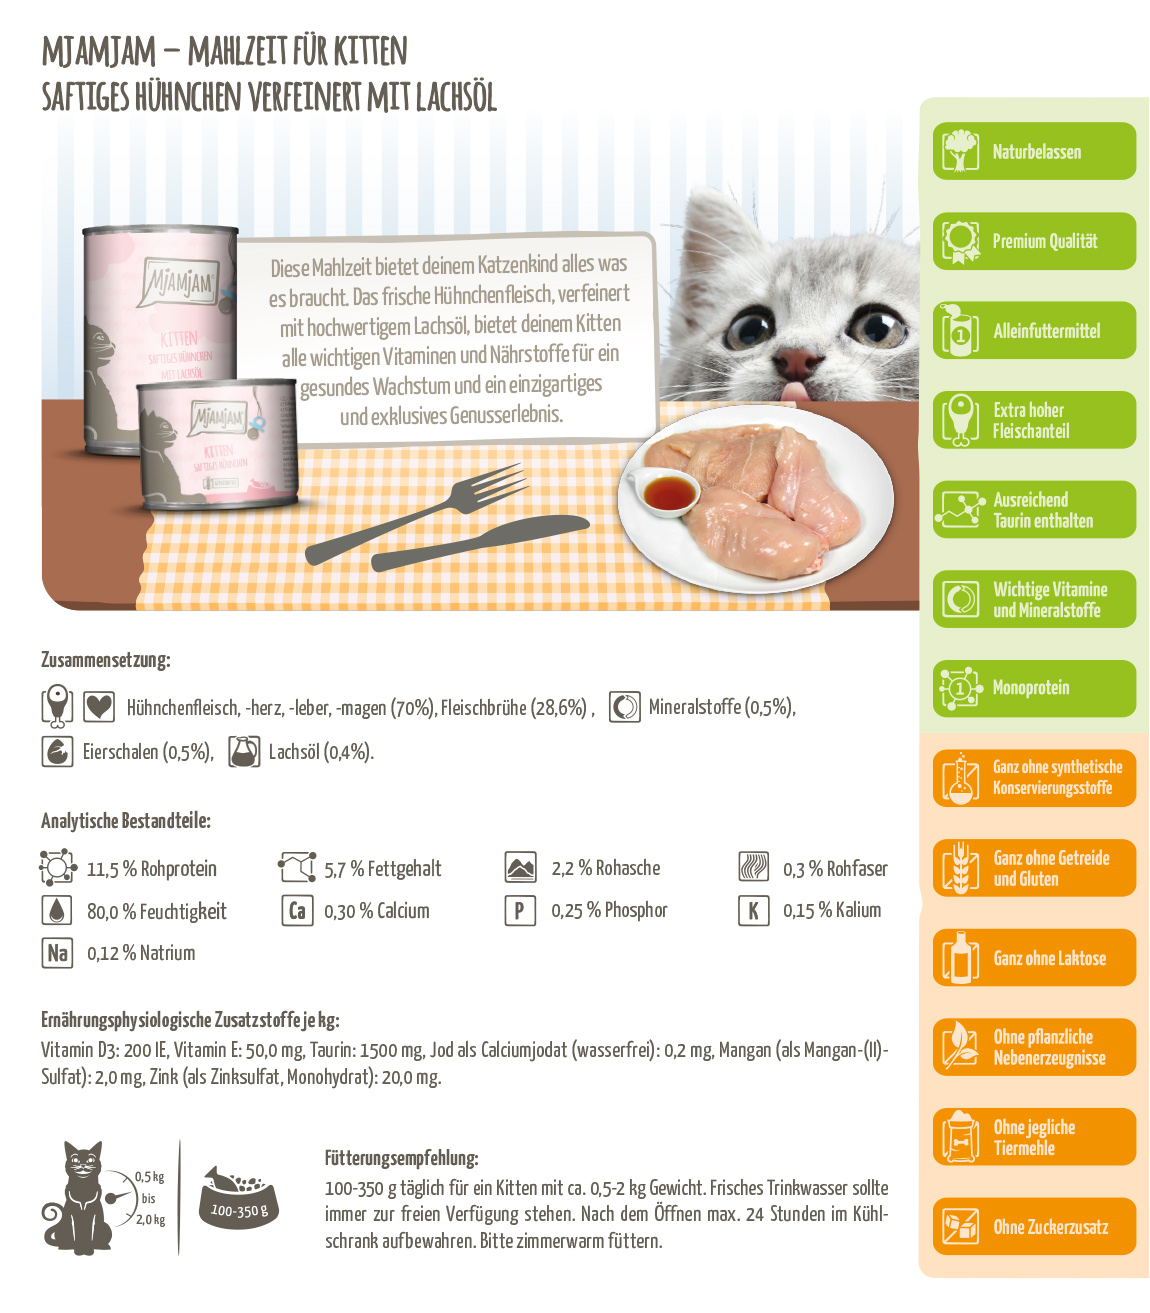 Produktbeschreibung-WEB-Kitten-Saftiges-Huhn-mit-LachsoelANDHXb1uWWp8H